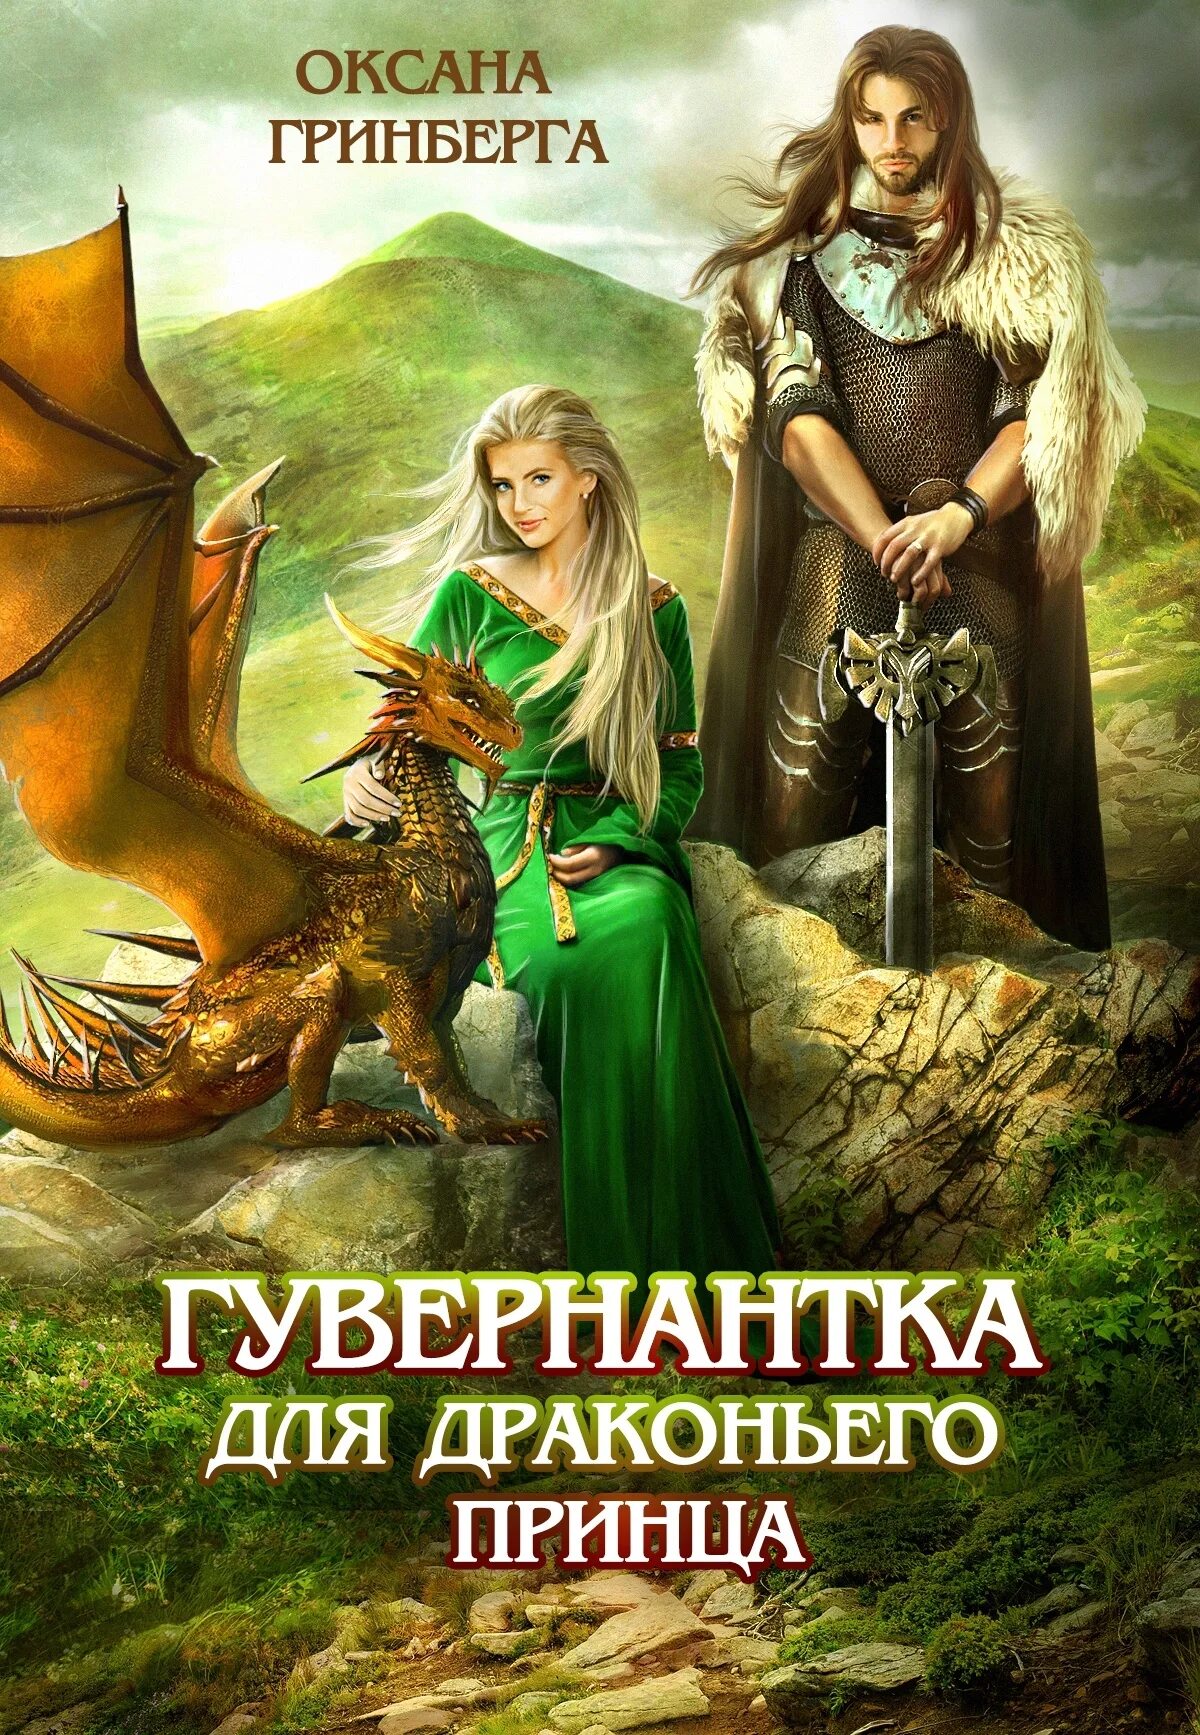 Читать книгу про драконов и попаданок. Гувернантка для драконьего принца.